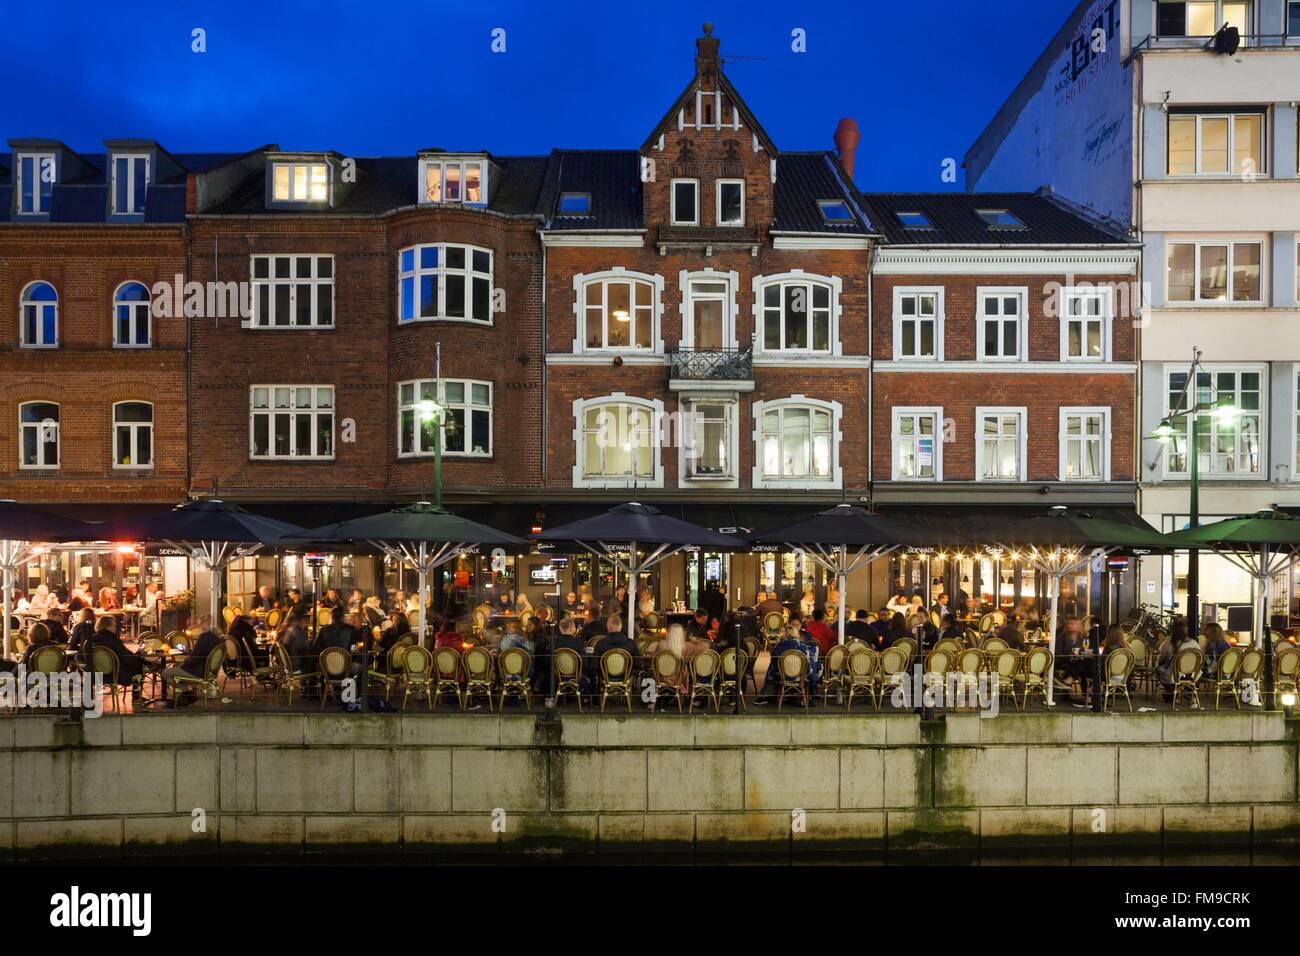 Le Danemark, le Jutland, Aarhus, Capitale européenne de la Culture 2017, les cafés au bord du canal, soir Banque D'Images